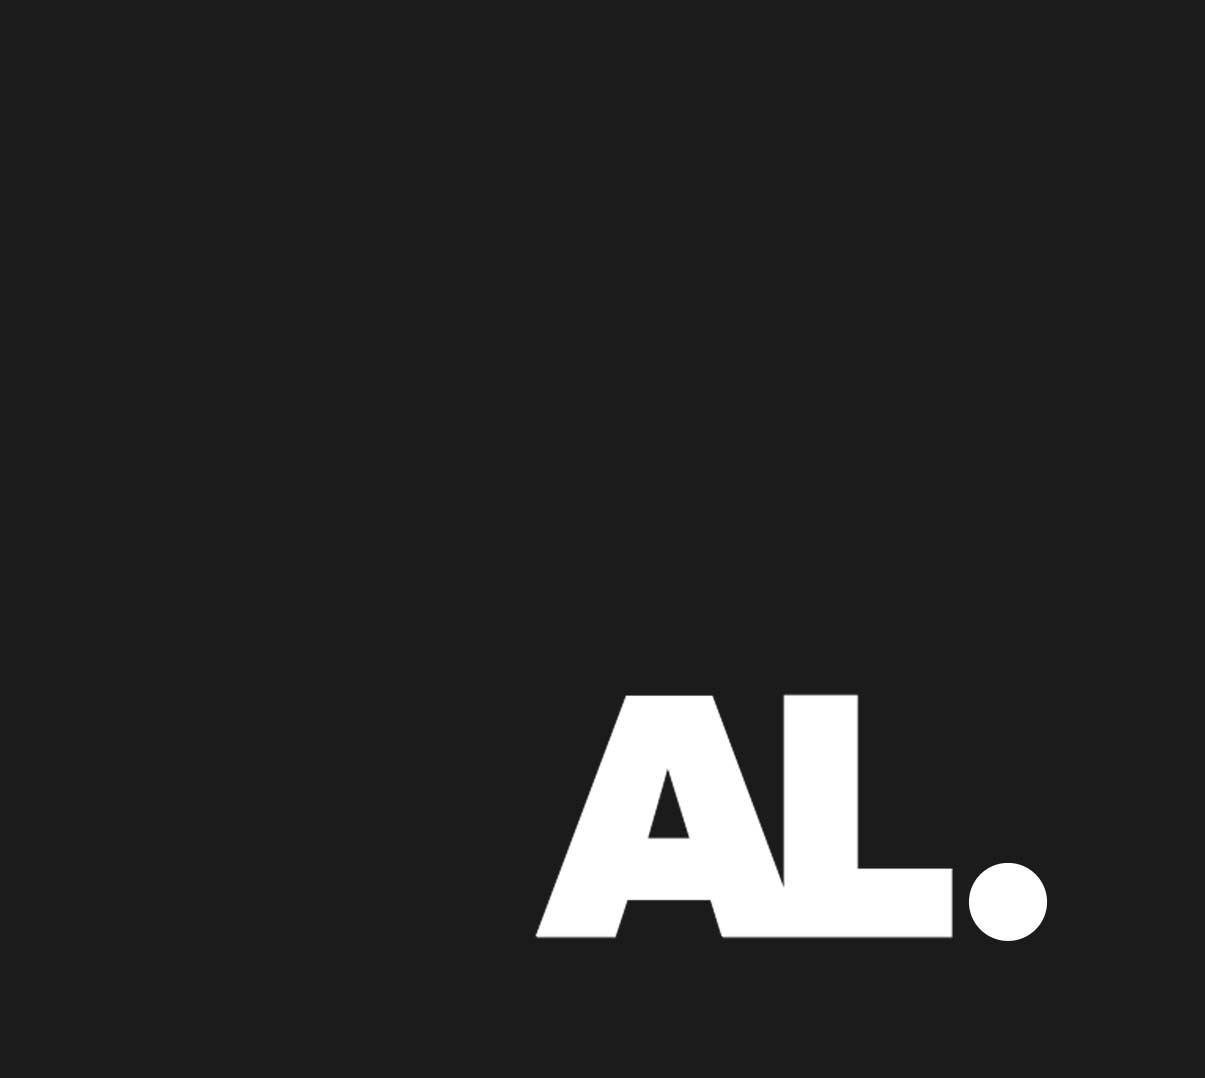 Acuity Law AL logo